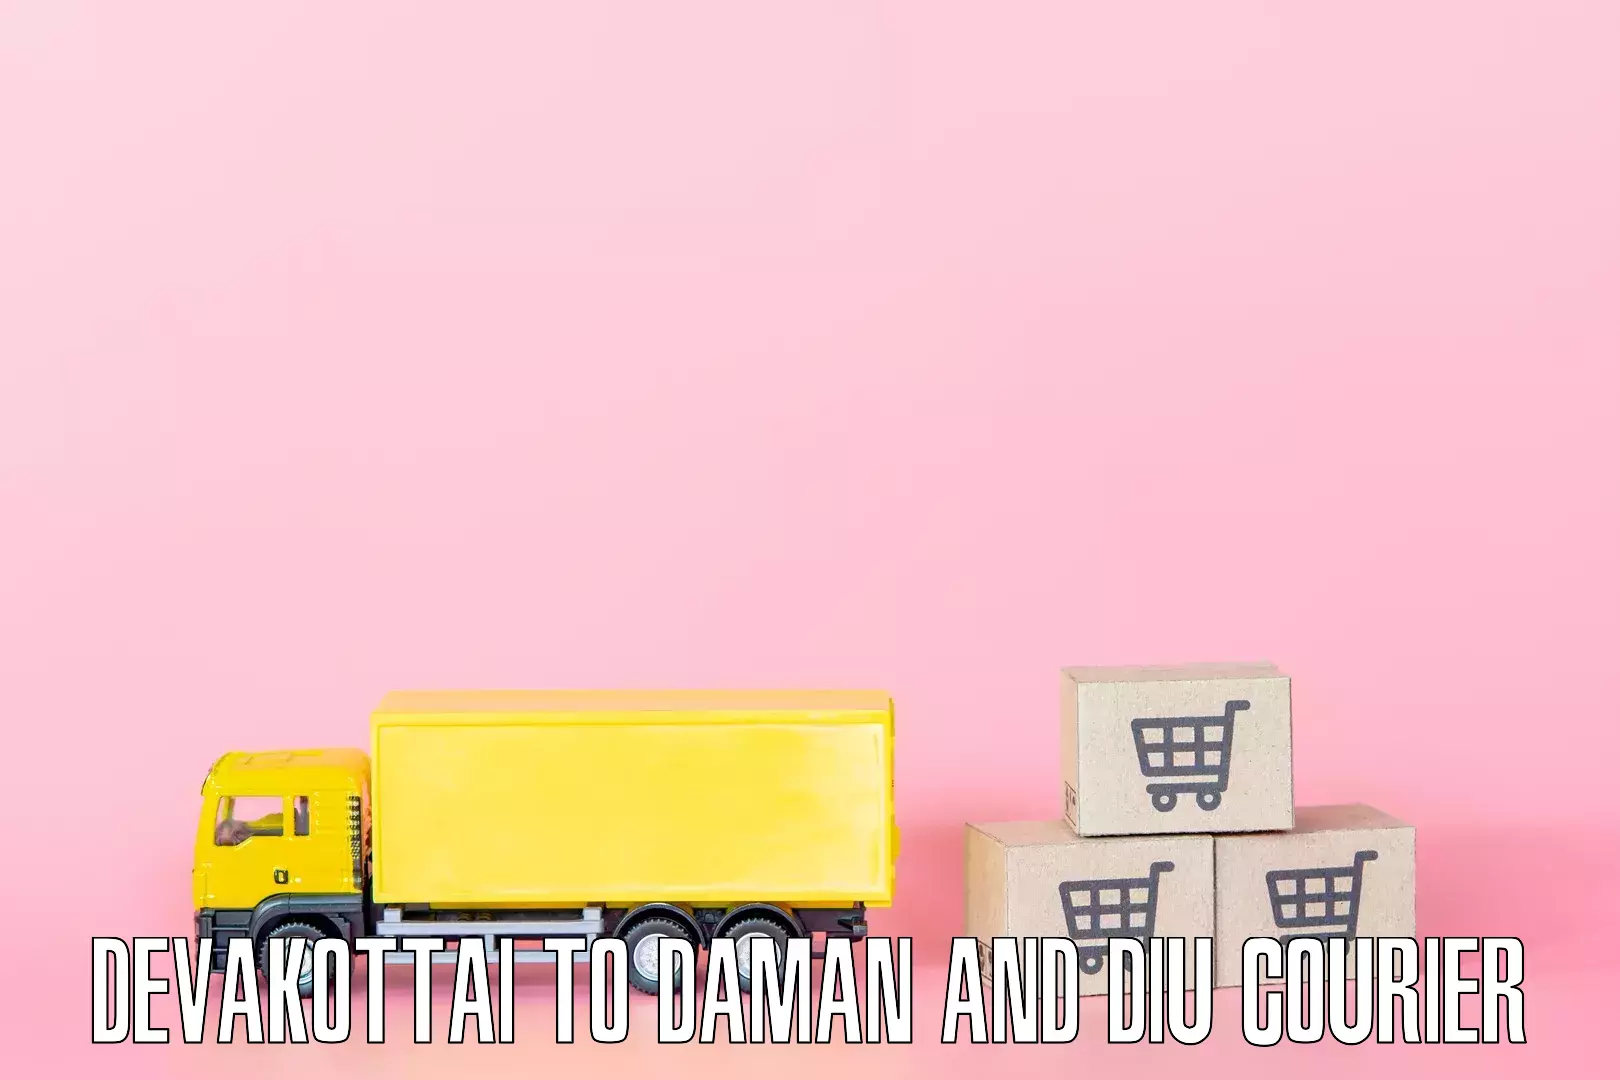 Furniture transport and logistics Devakottai to Daman and Diu